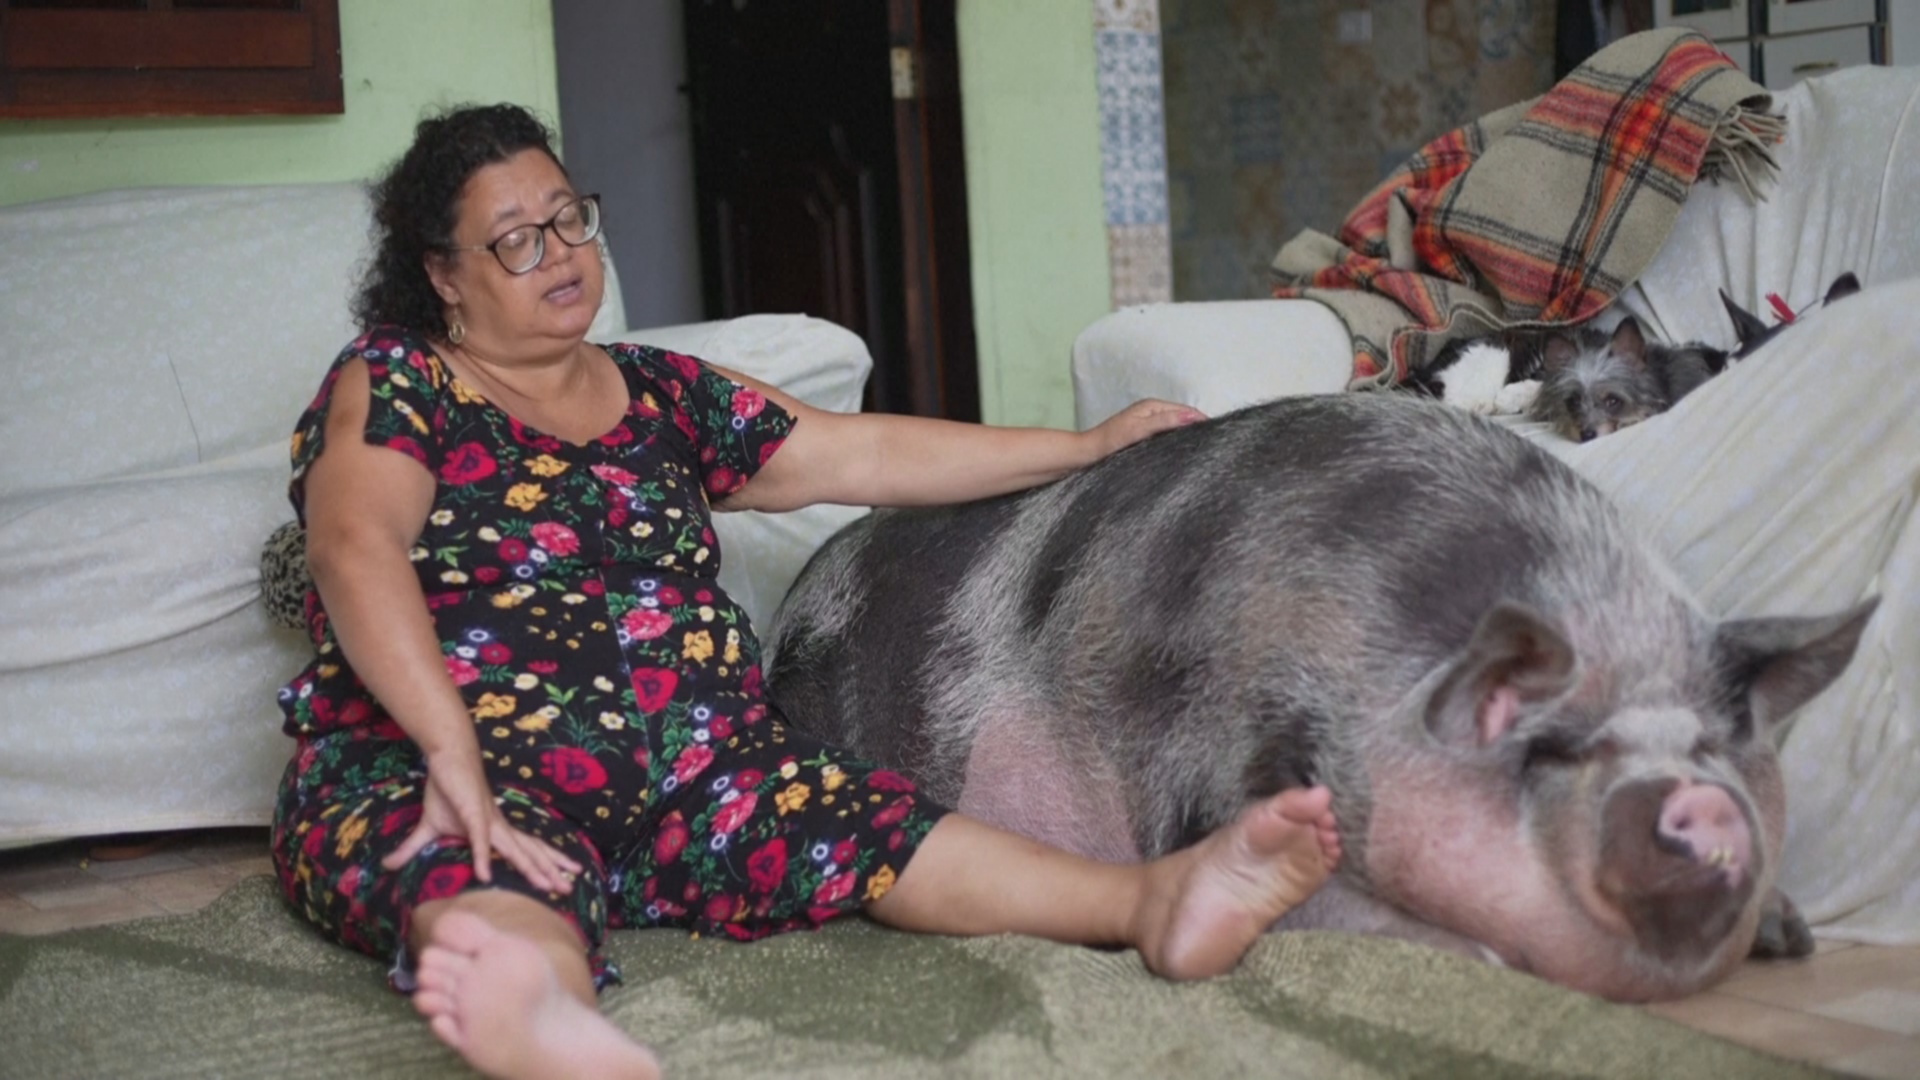 Женщина купила карликовую свинью, а она уже весит 250 кг